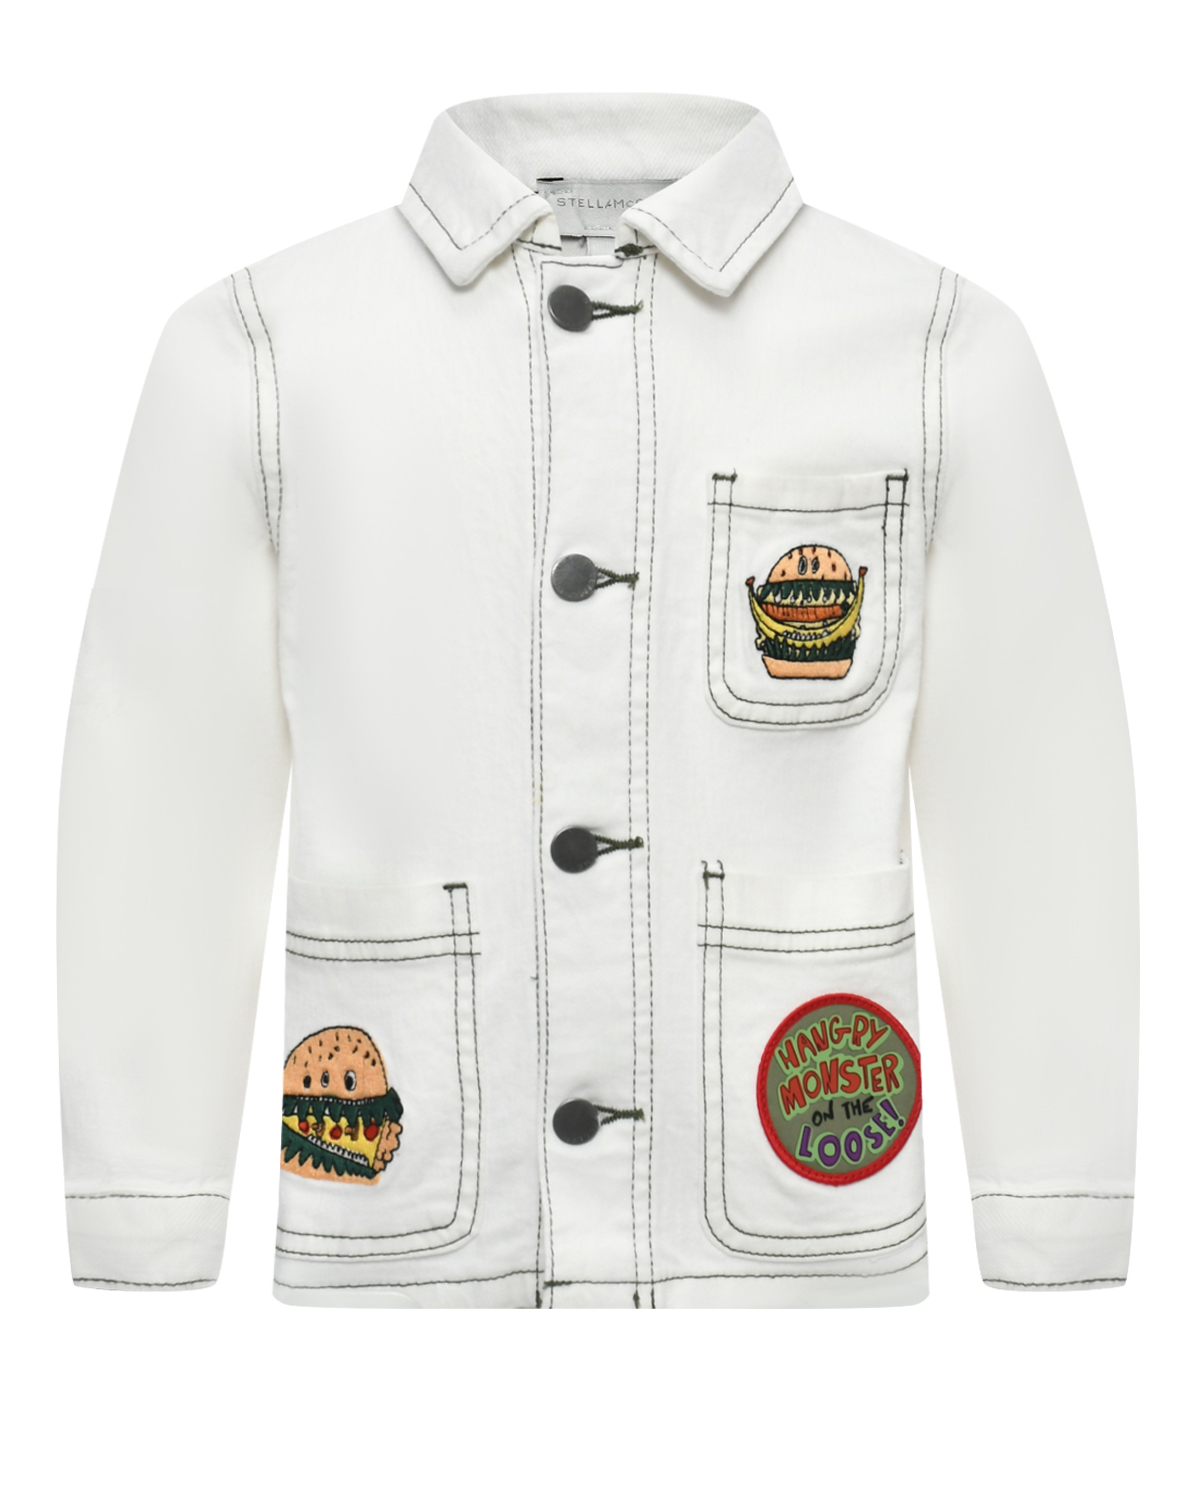 Джинсовая куртка с аппликациями Stella McCartney, размер 116, цвет белый